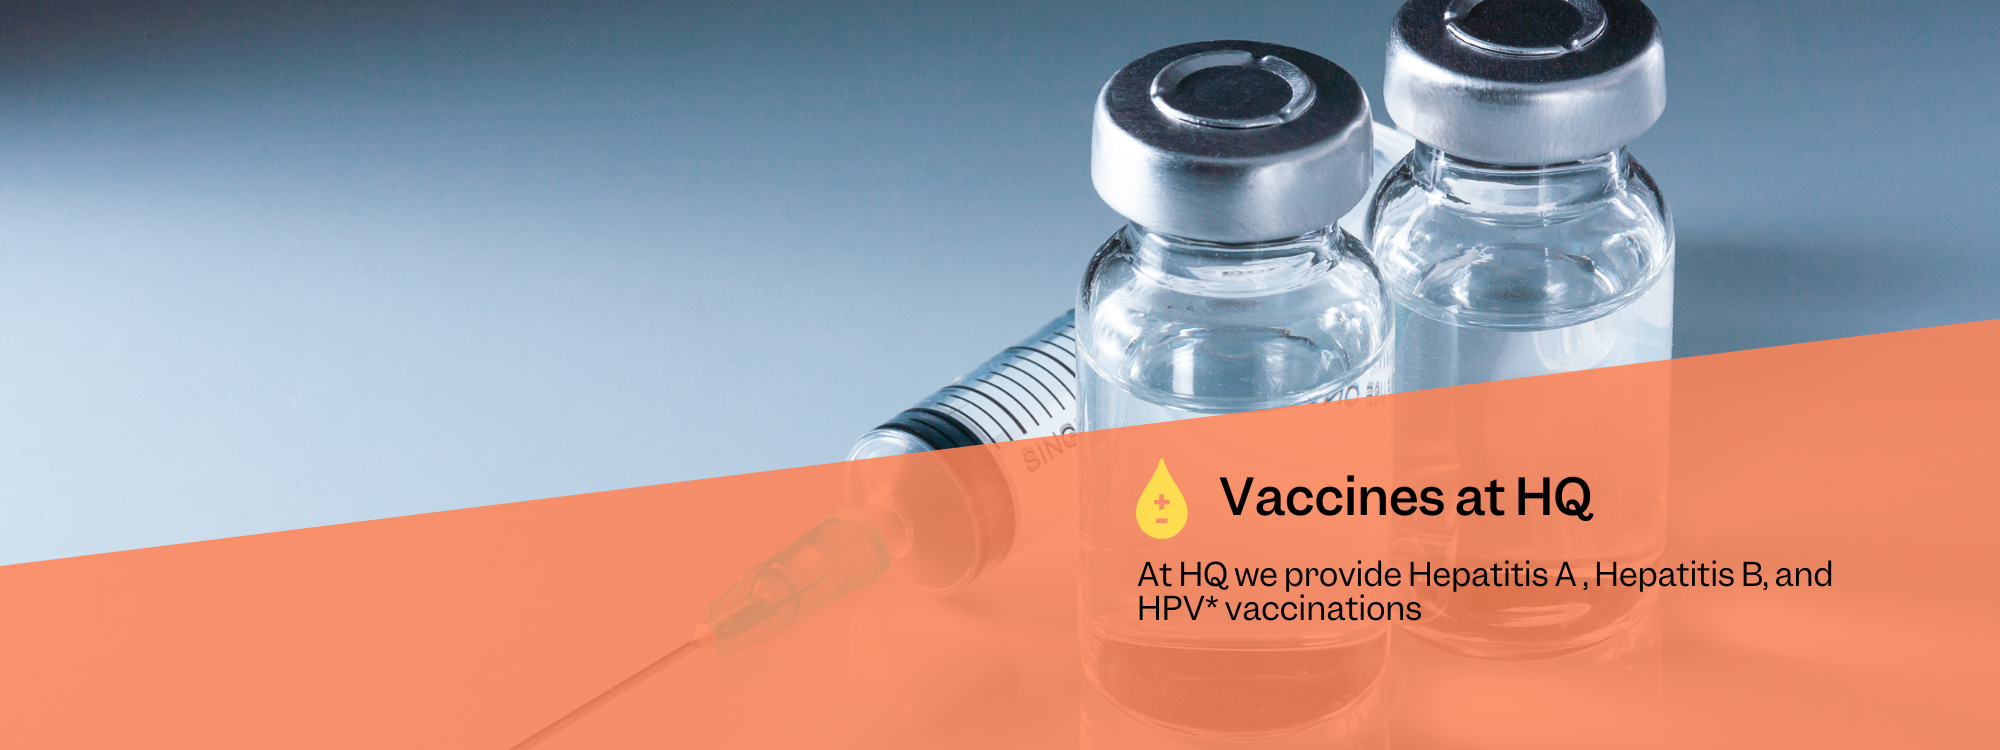 HQ Vaccines